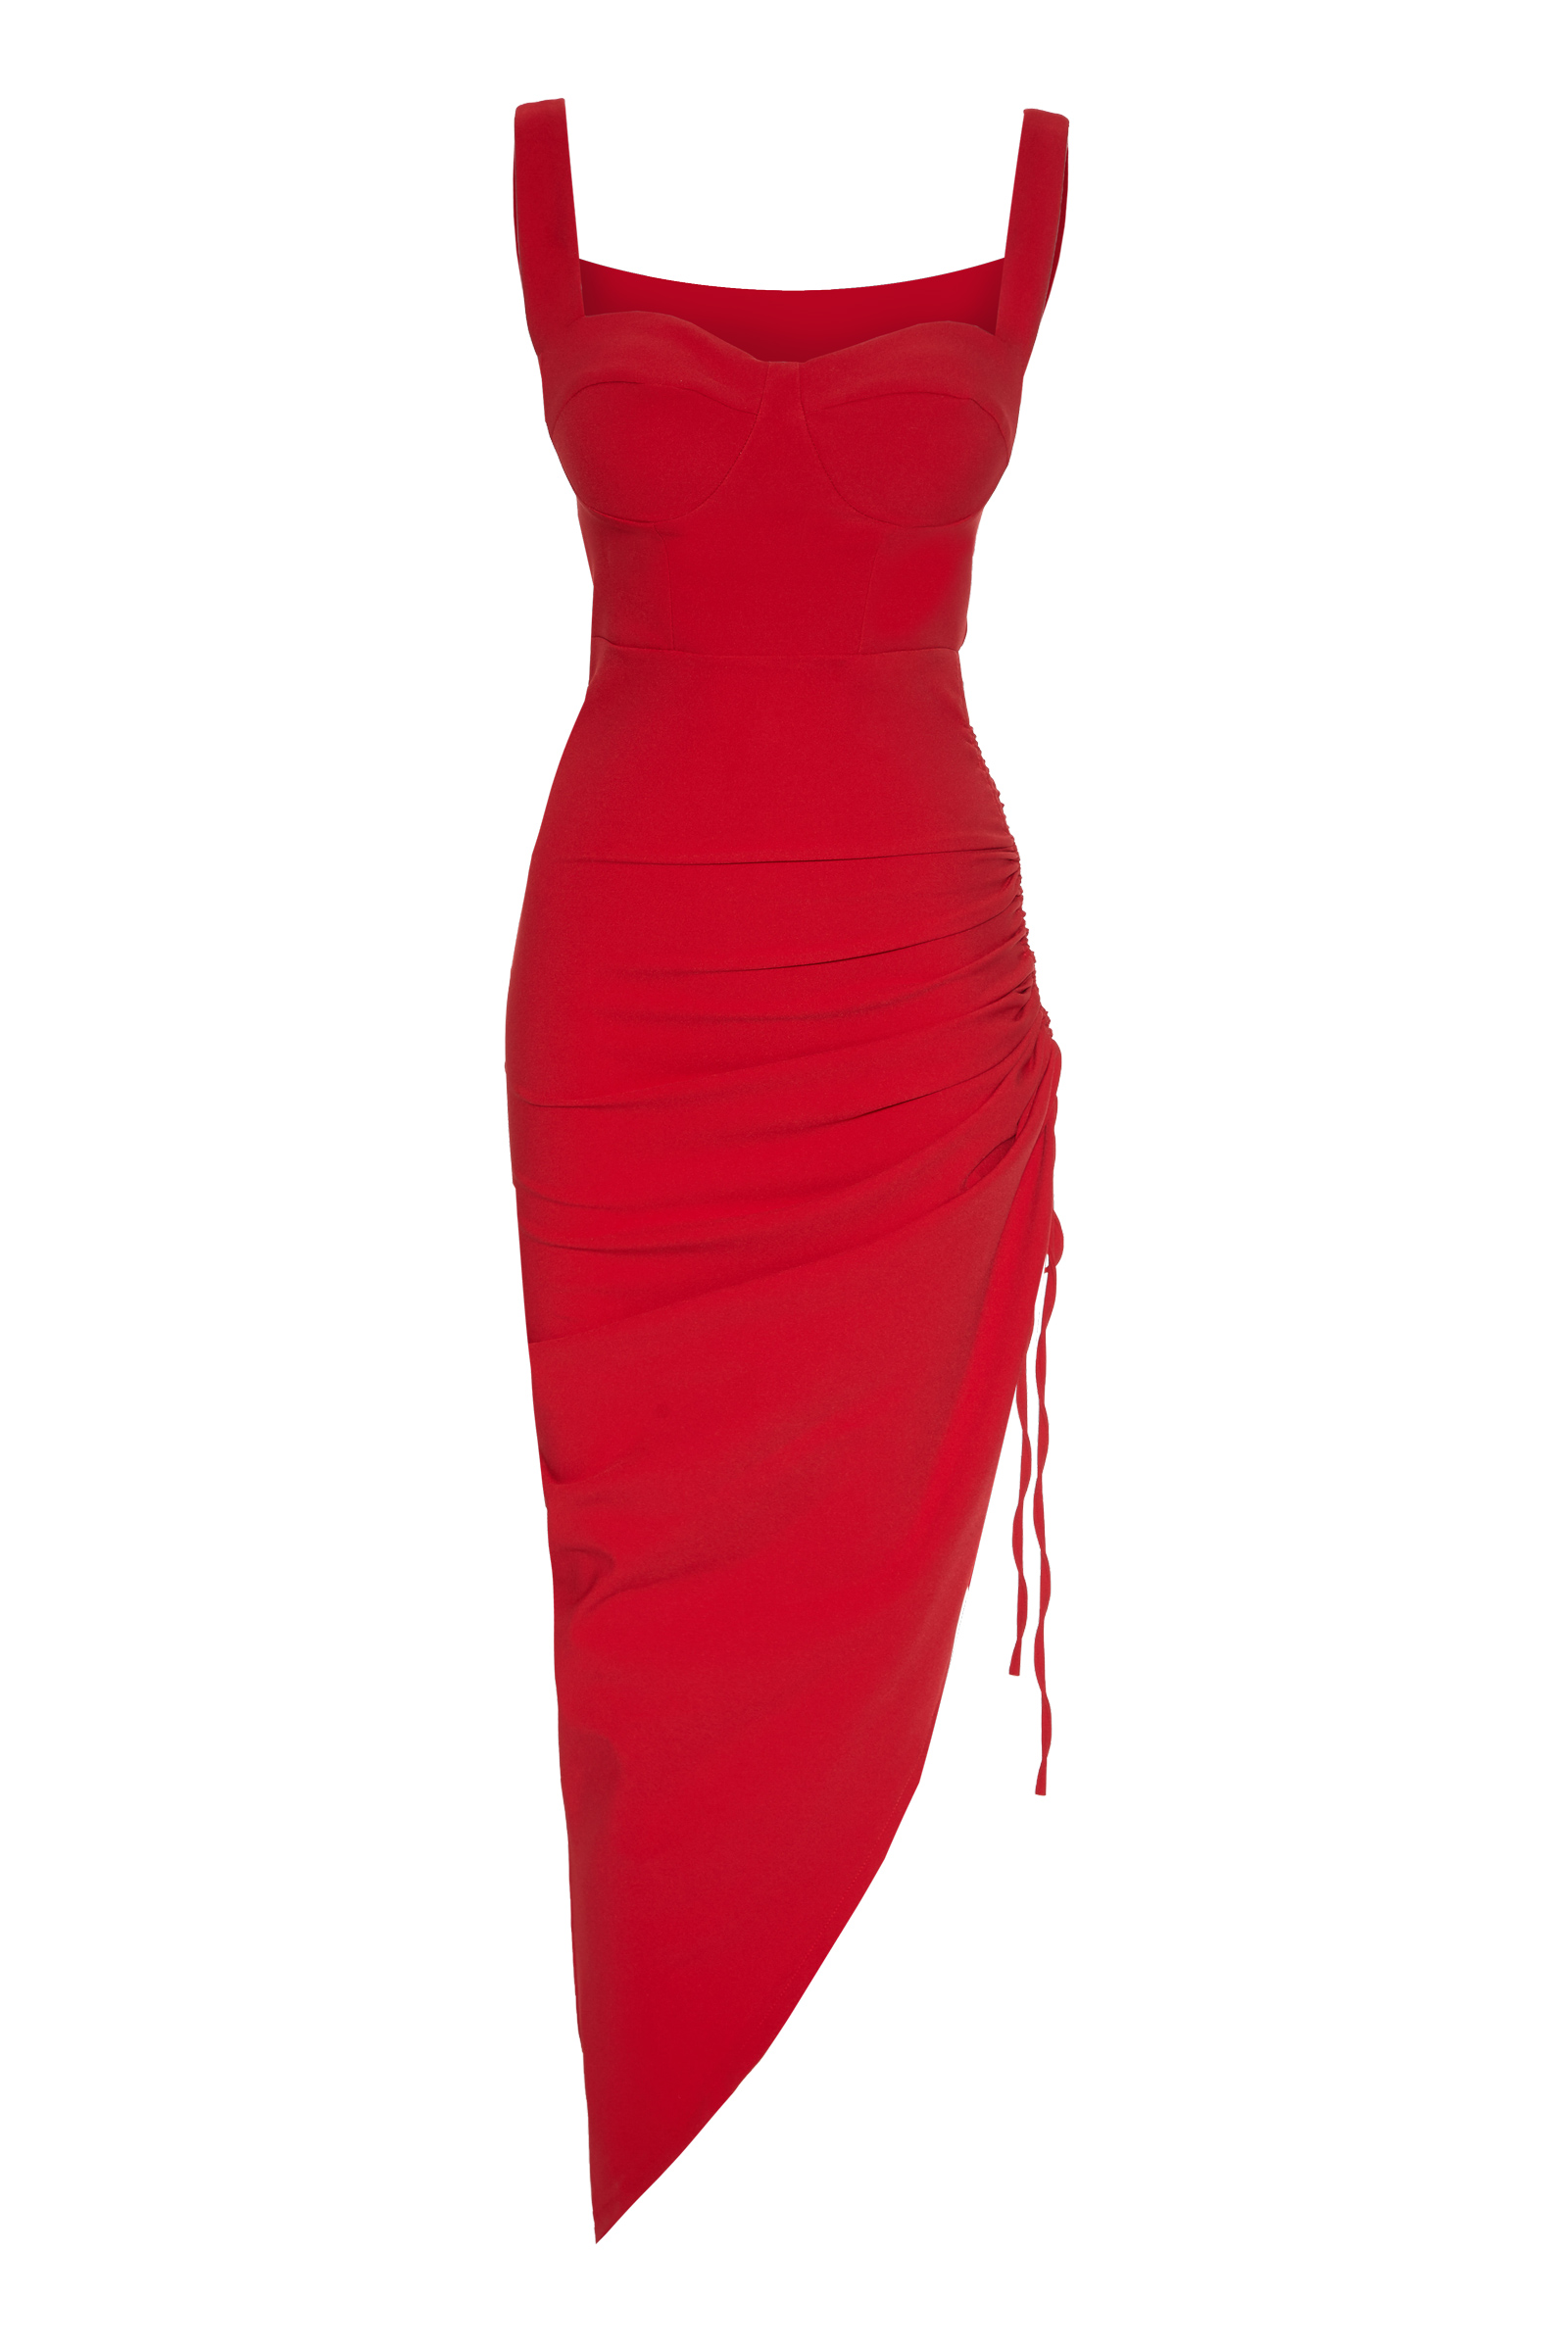 Kırmızı kolsuz uzun elbise